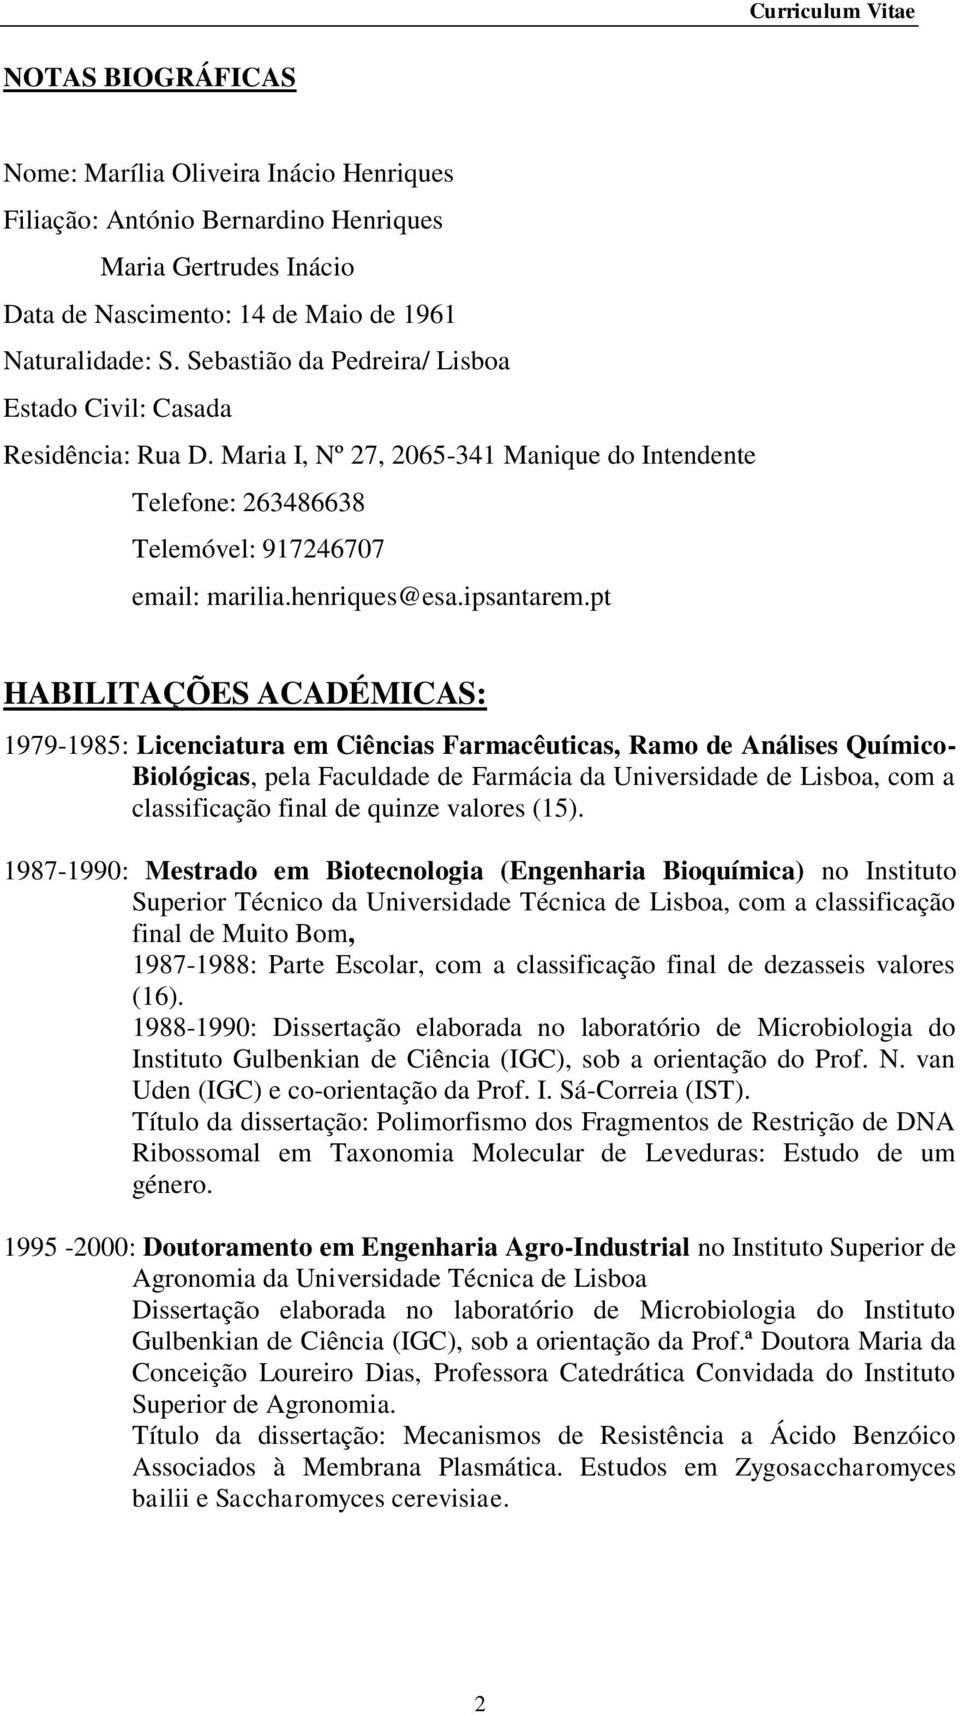 Ferramentas para diferentes modelos de curriculum vitae. Marilia Oliveira Inacio Henriques Curriculum Vitae Pdf Free Download